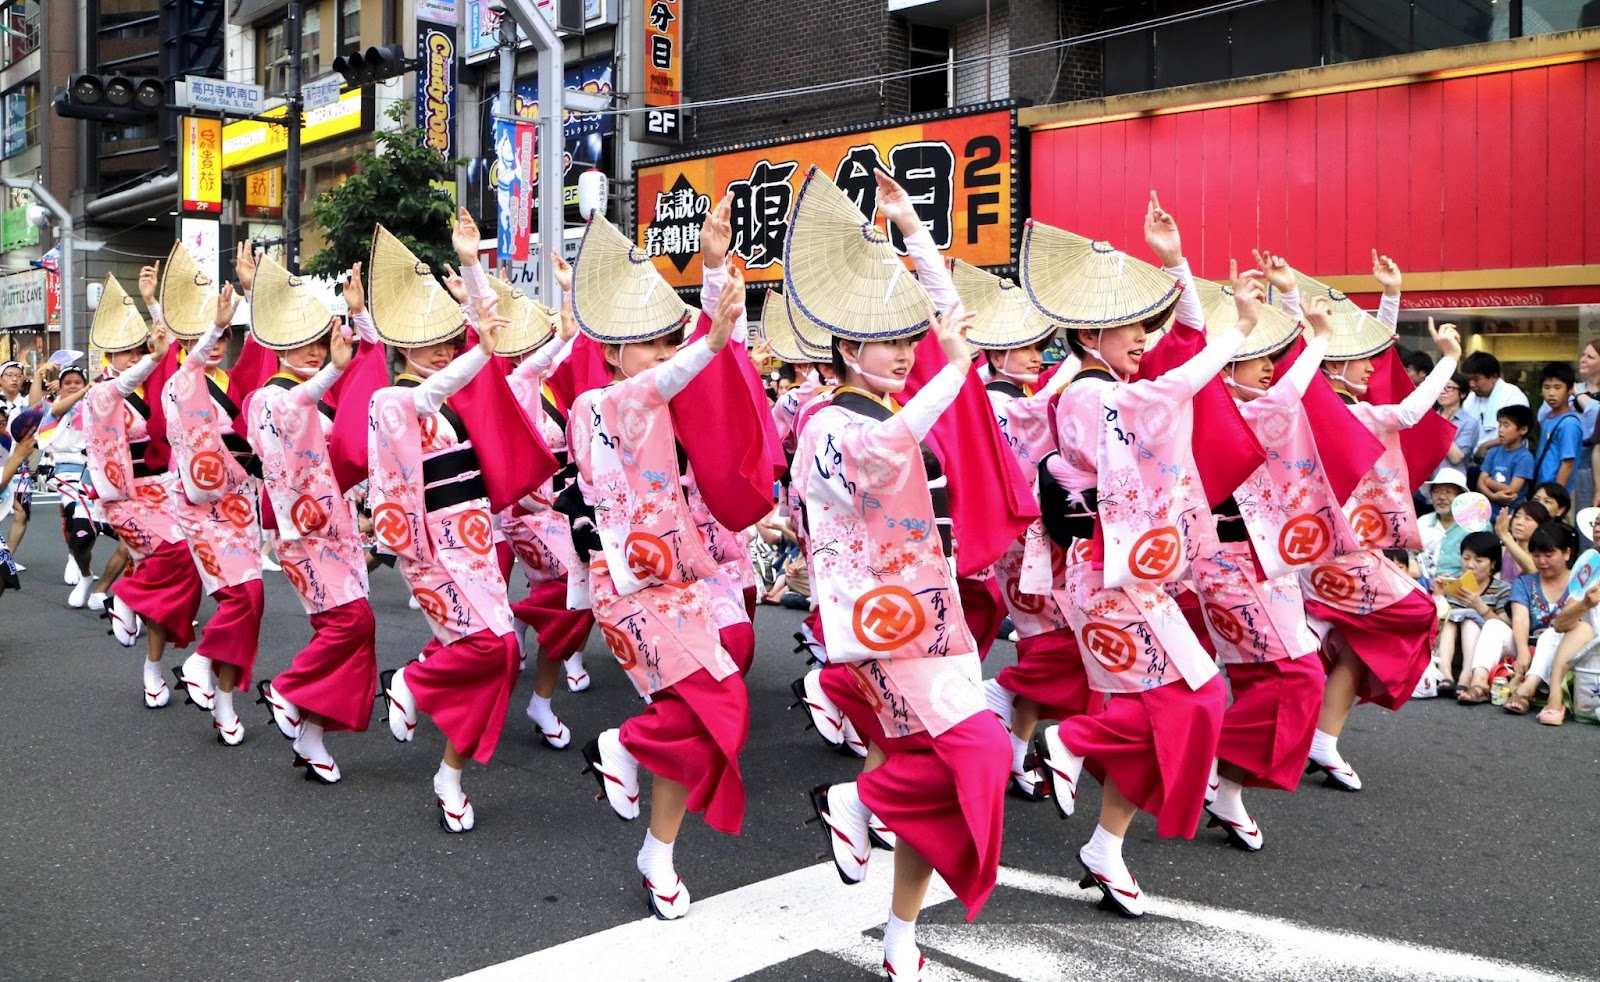 เทศกาลสำคัญในช่วงฤดูร้อนกับ 7 สถานที่ท่องเที่ยวสุดชิลล์ สำหรับเฉลิมฉลองของชาวญี่ปุ่น ! 14